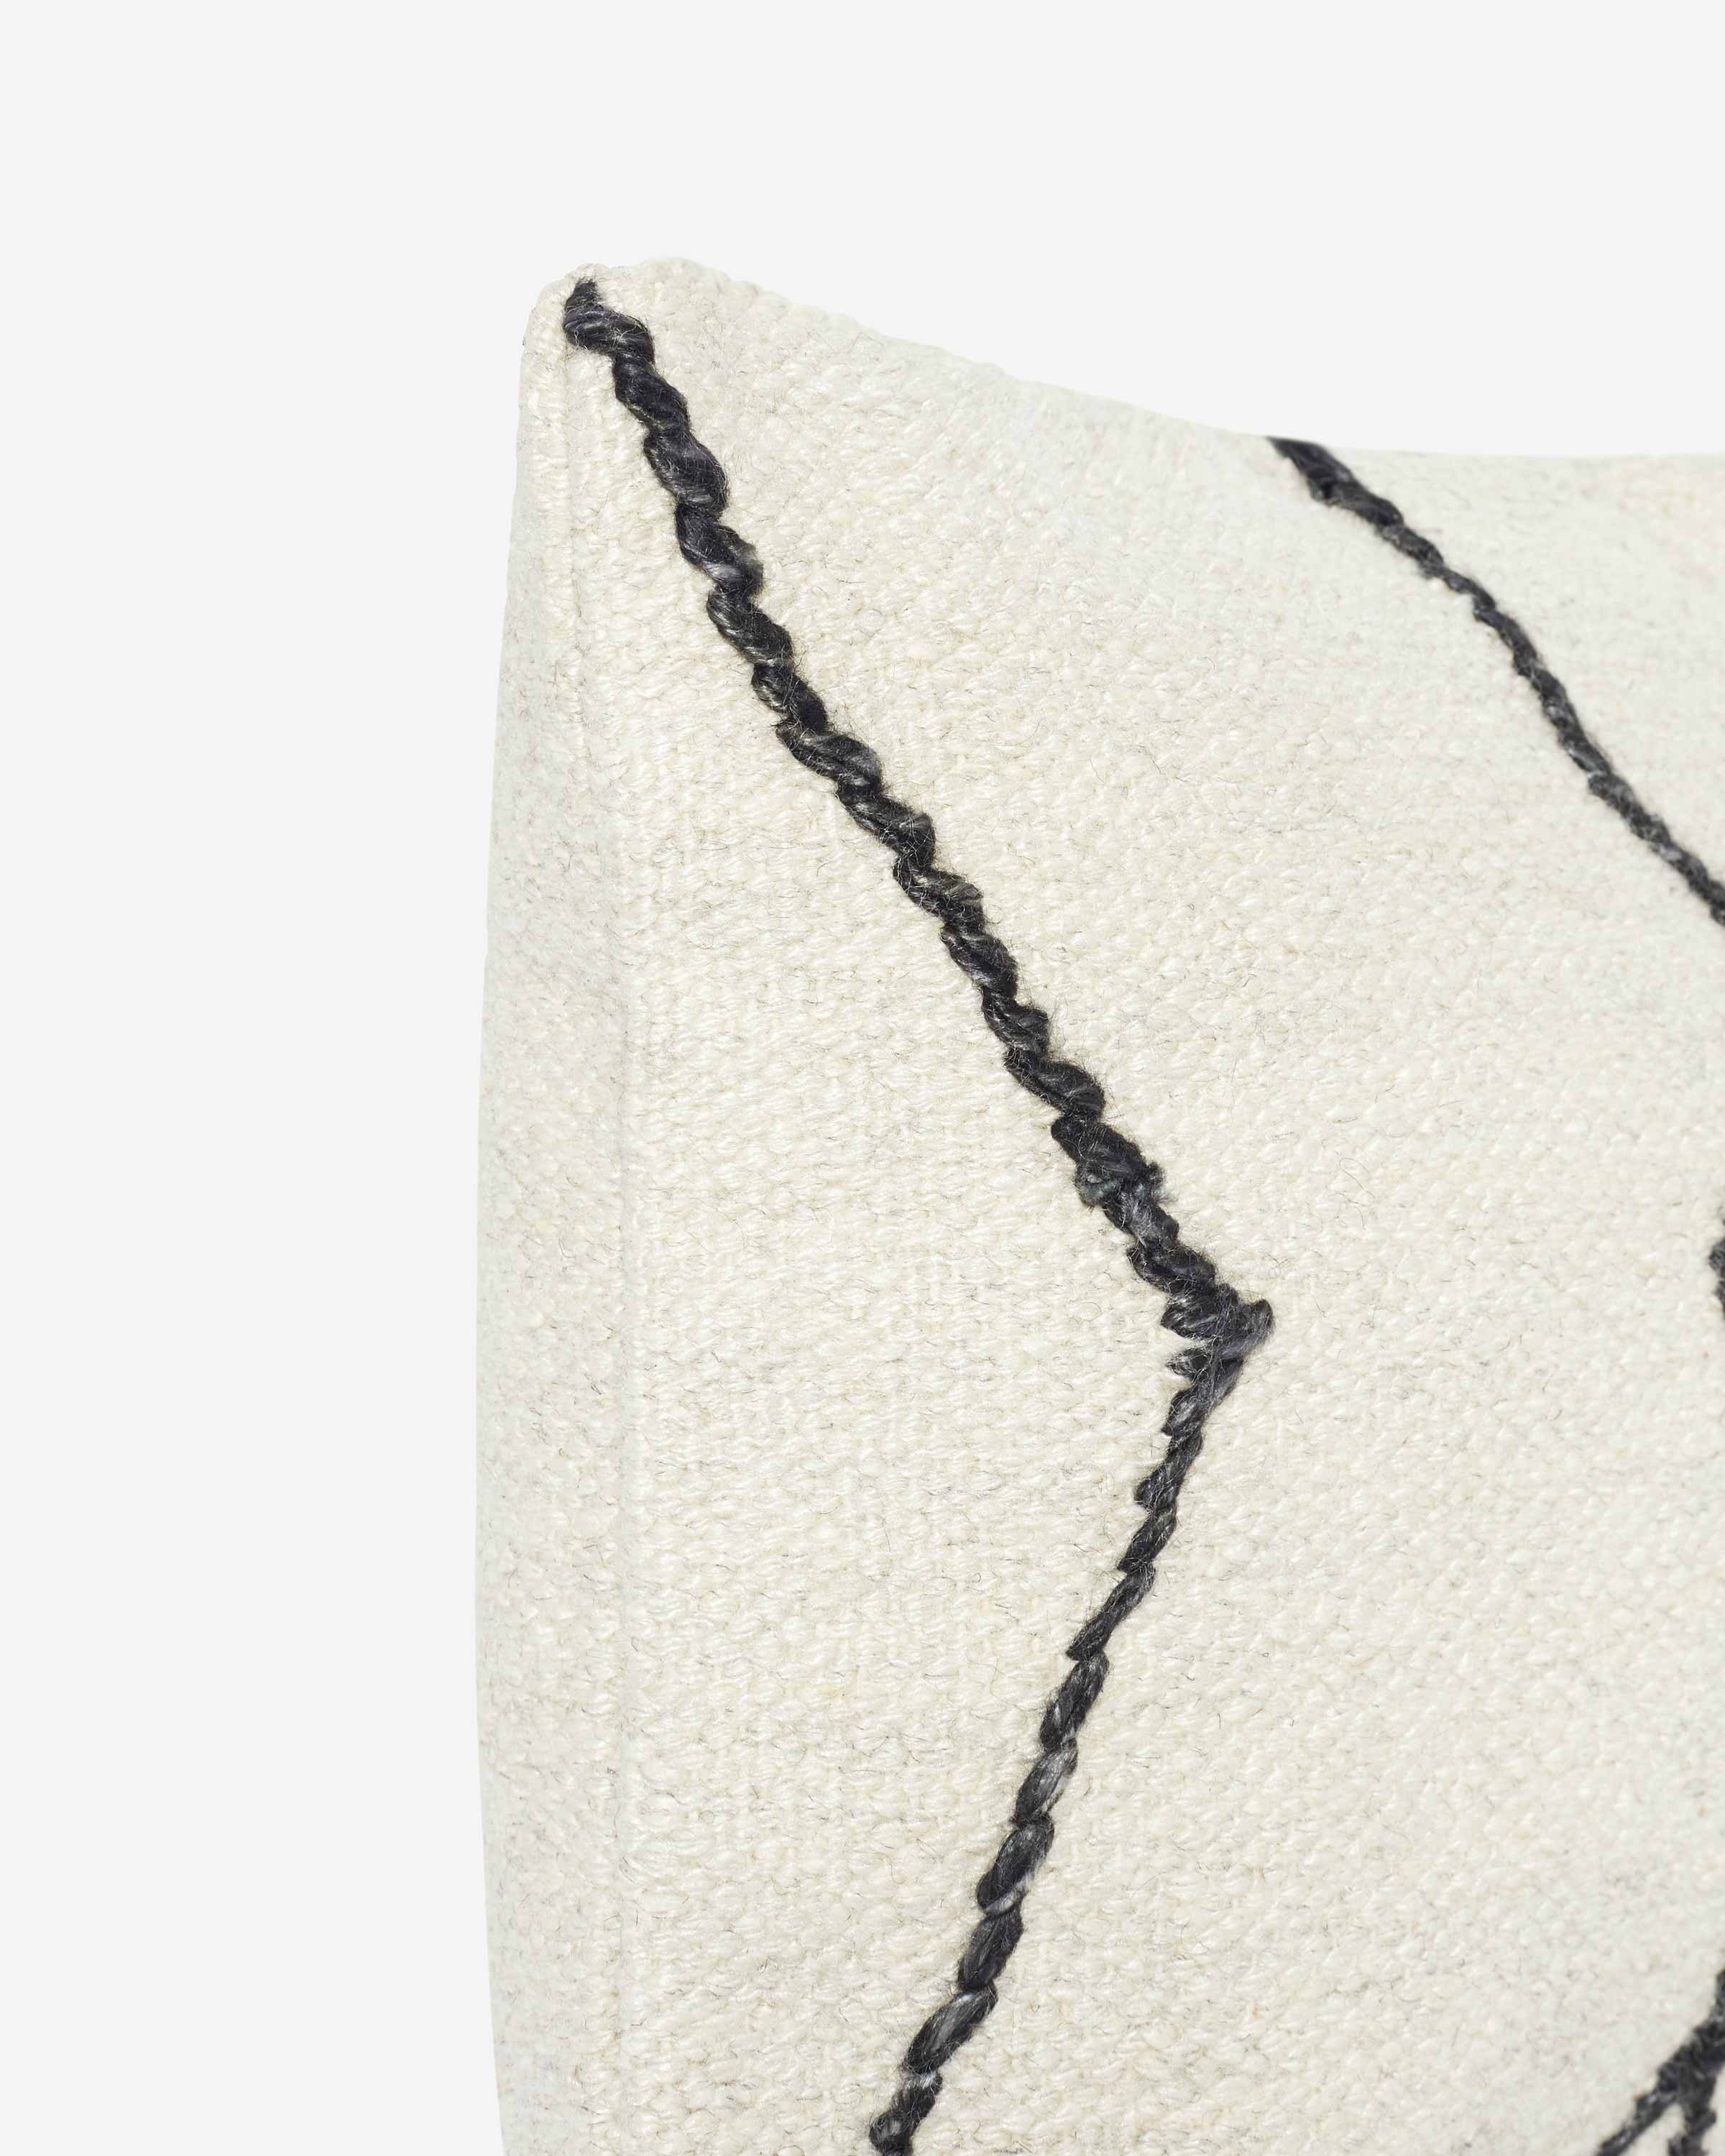 Moroccan Flatweave Lumbar Pillow, Black & Natural By Sarah Sherman Samuel - Image 4